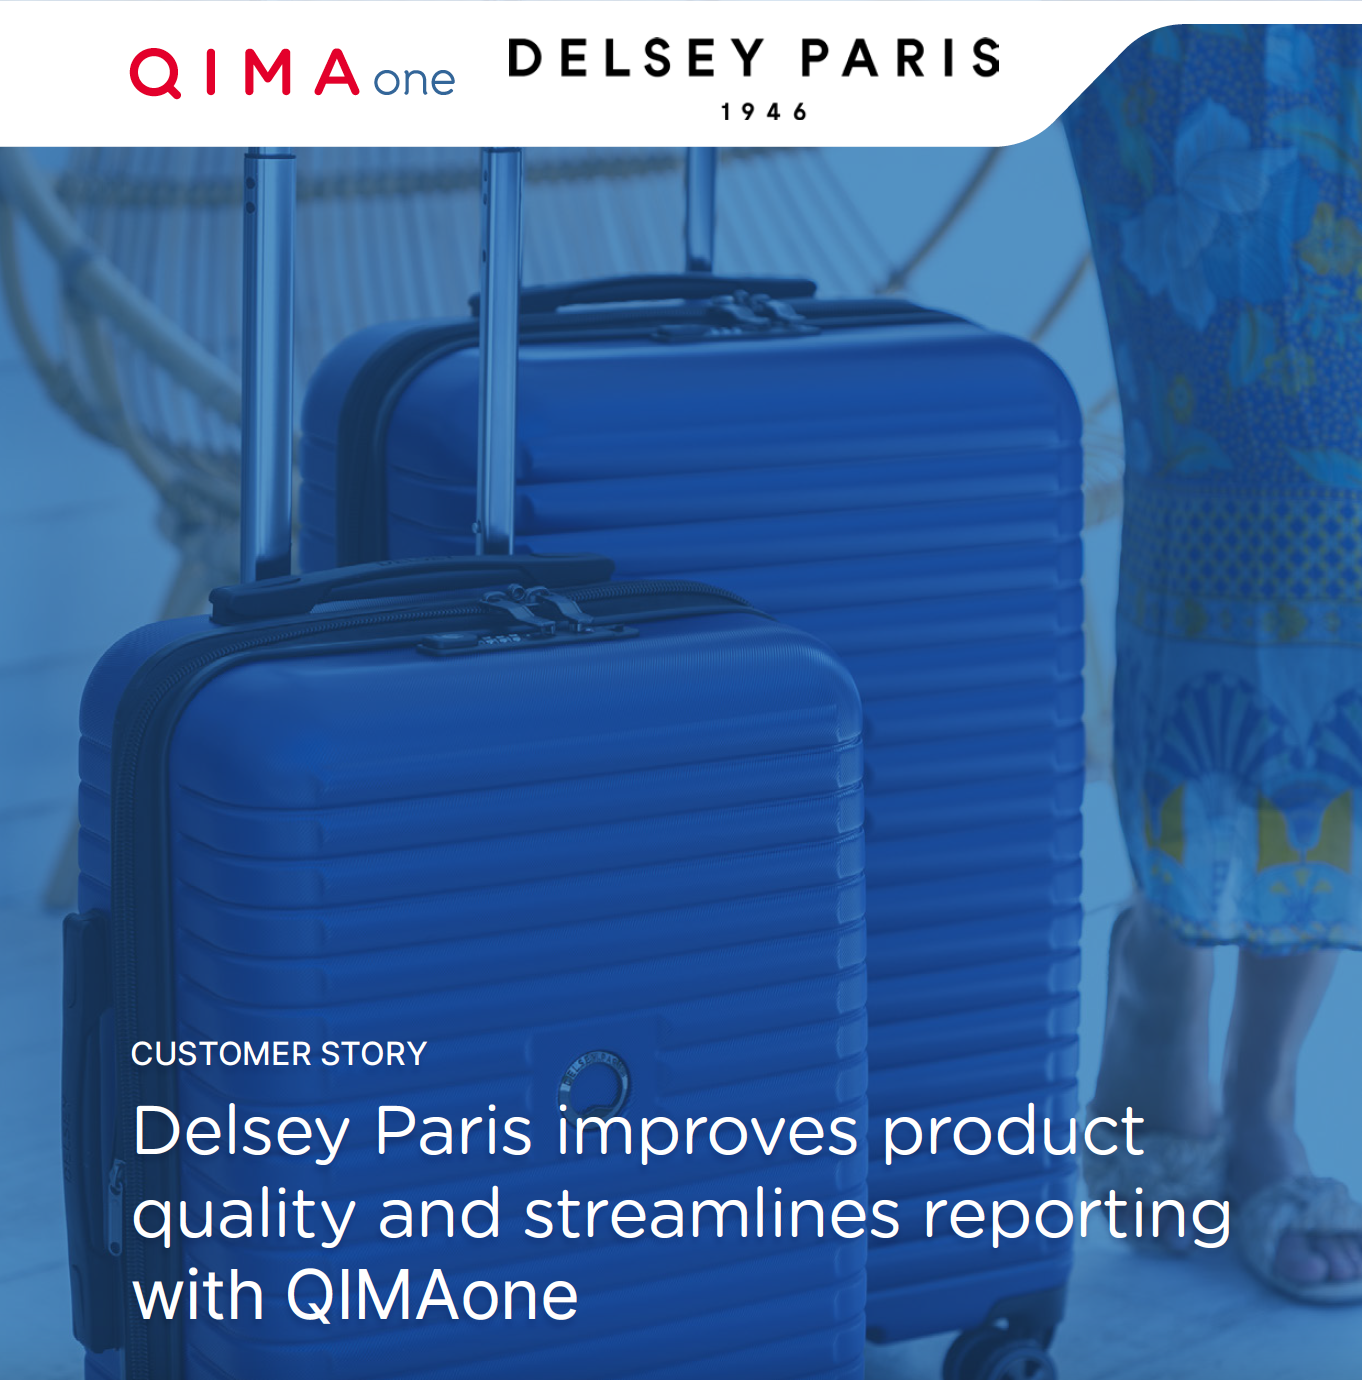 Delsey Paris verbessert die Produktqualität und rationalisiert die Berichterstattung mit QIMAone